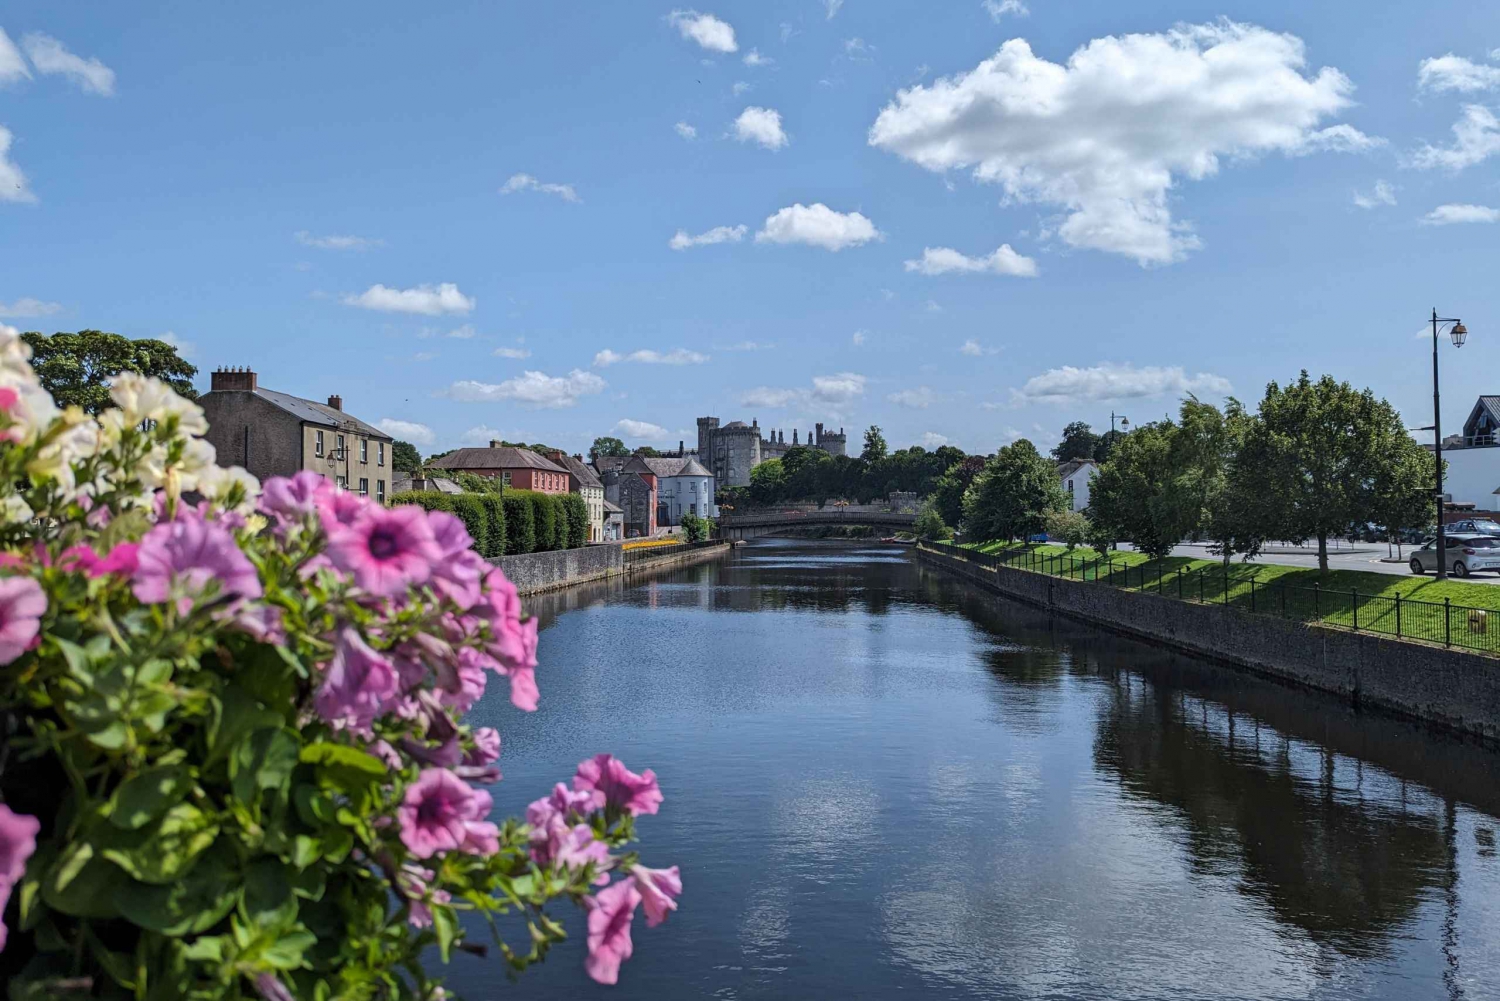 Kilkenny: wandeltocht met historische hoogtepunten